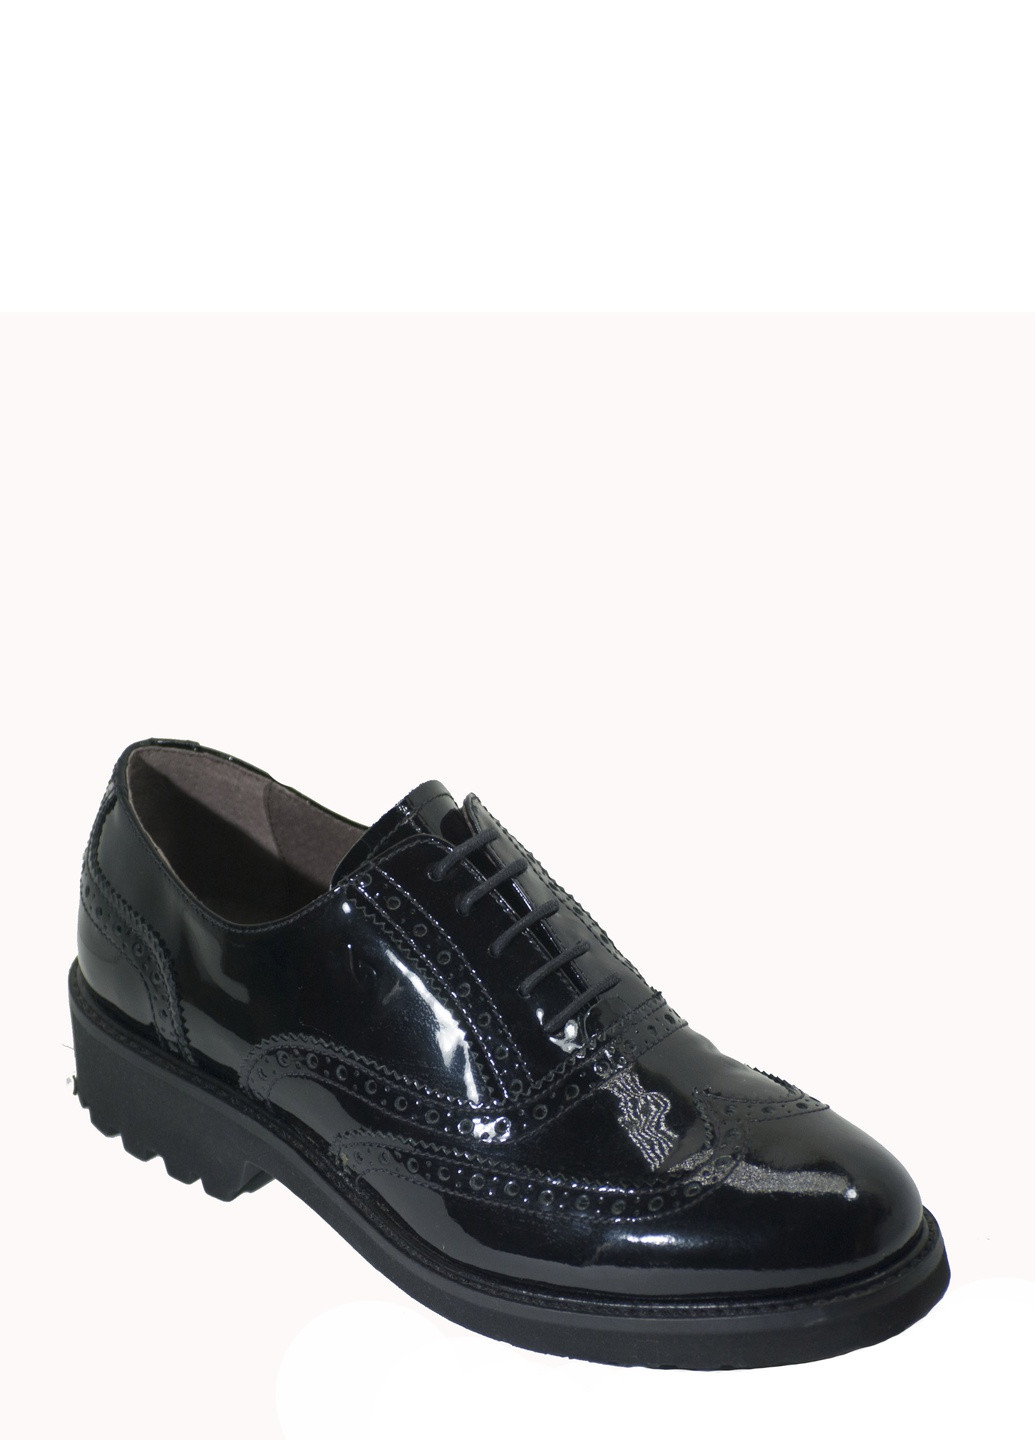 Туфли Nero Giardini на низком каблуке лаковые, со шнуровкой